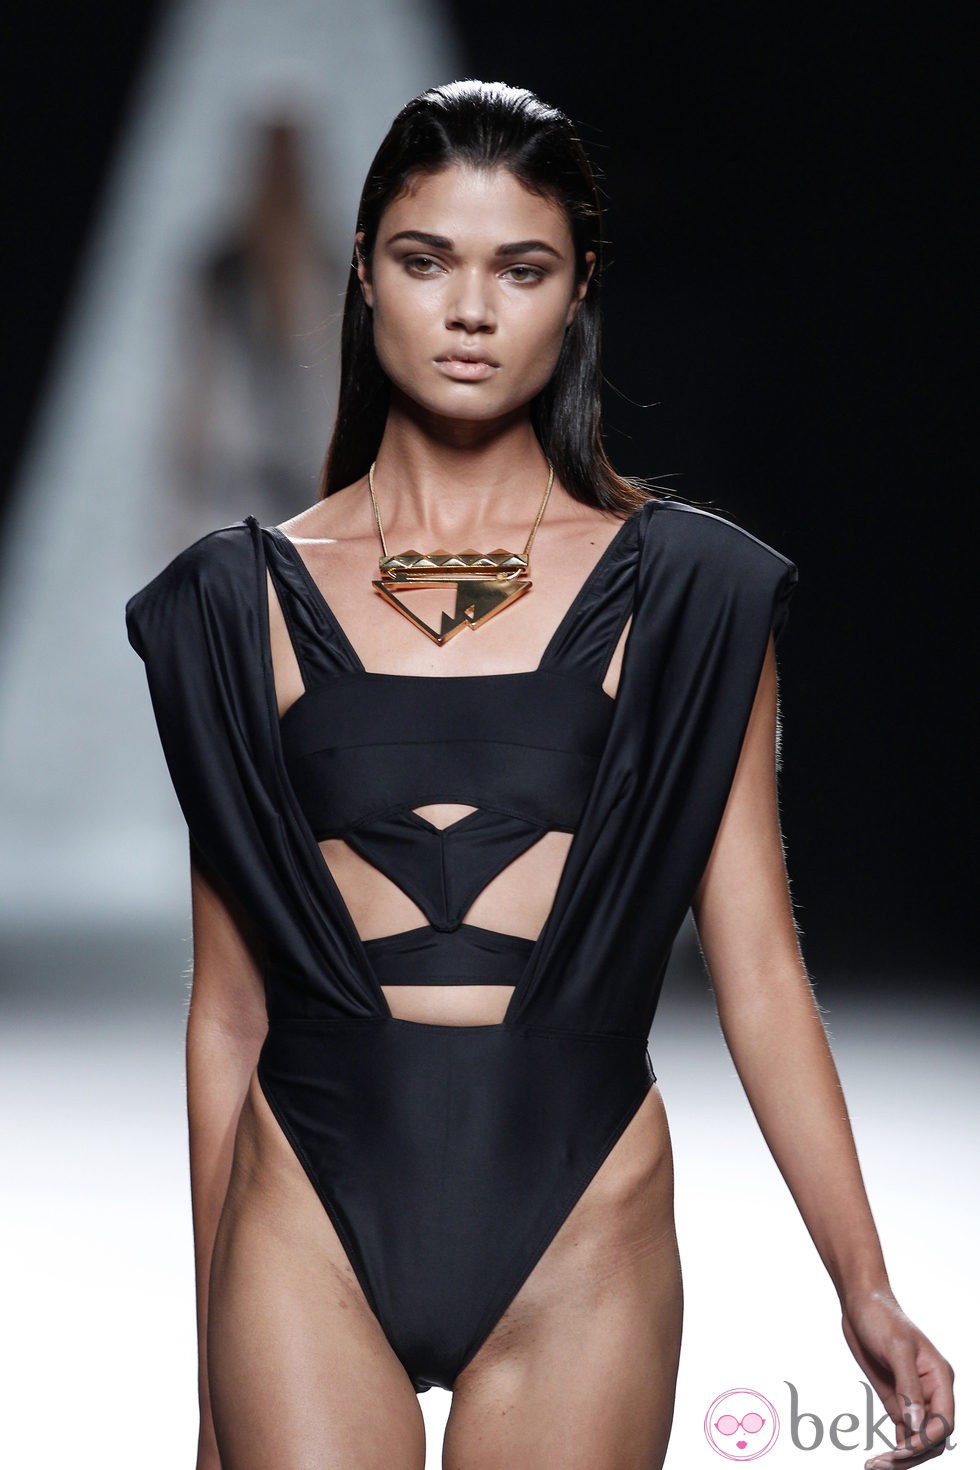 Bañador negro de la colección primavera/verano 2014 de Ana Locking en Madrid Fashion Week